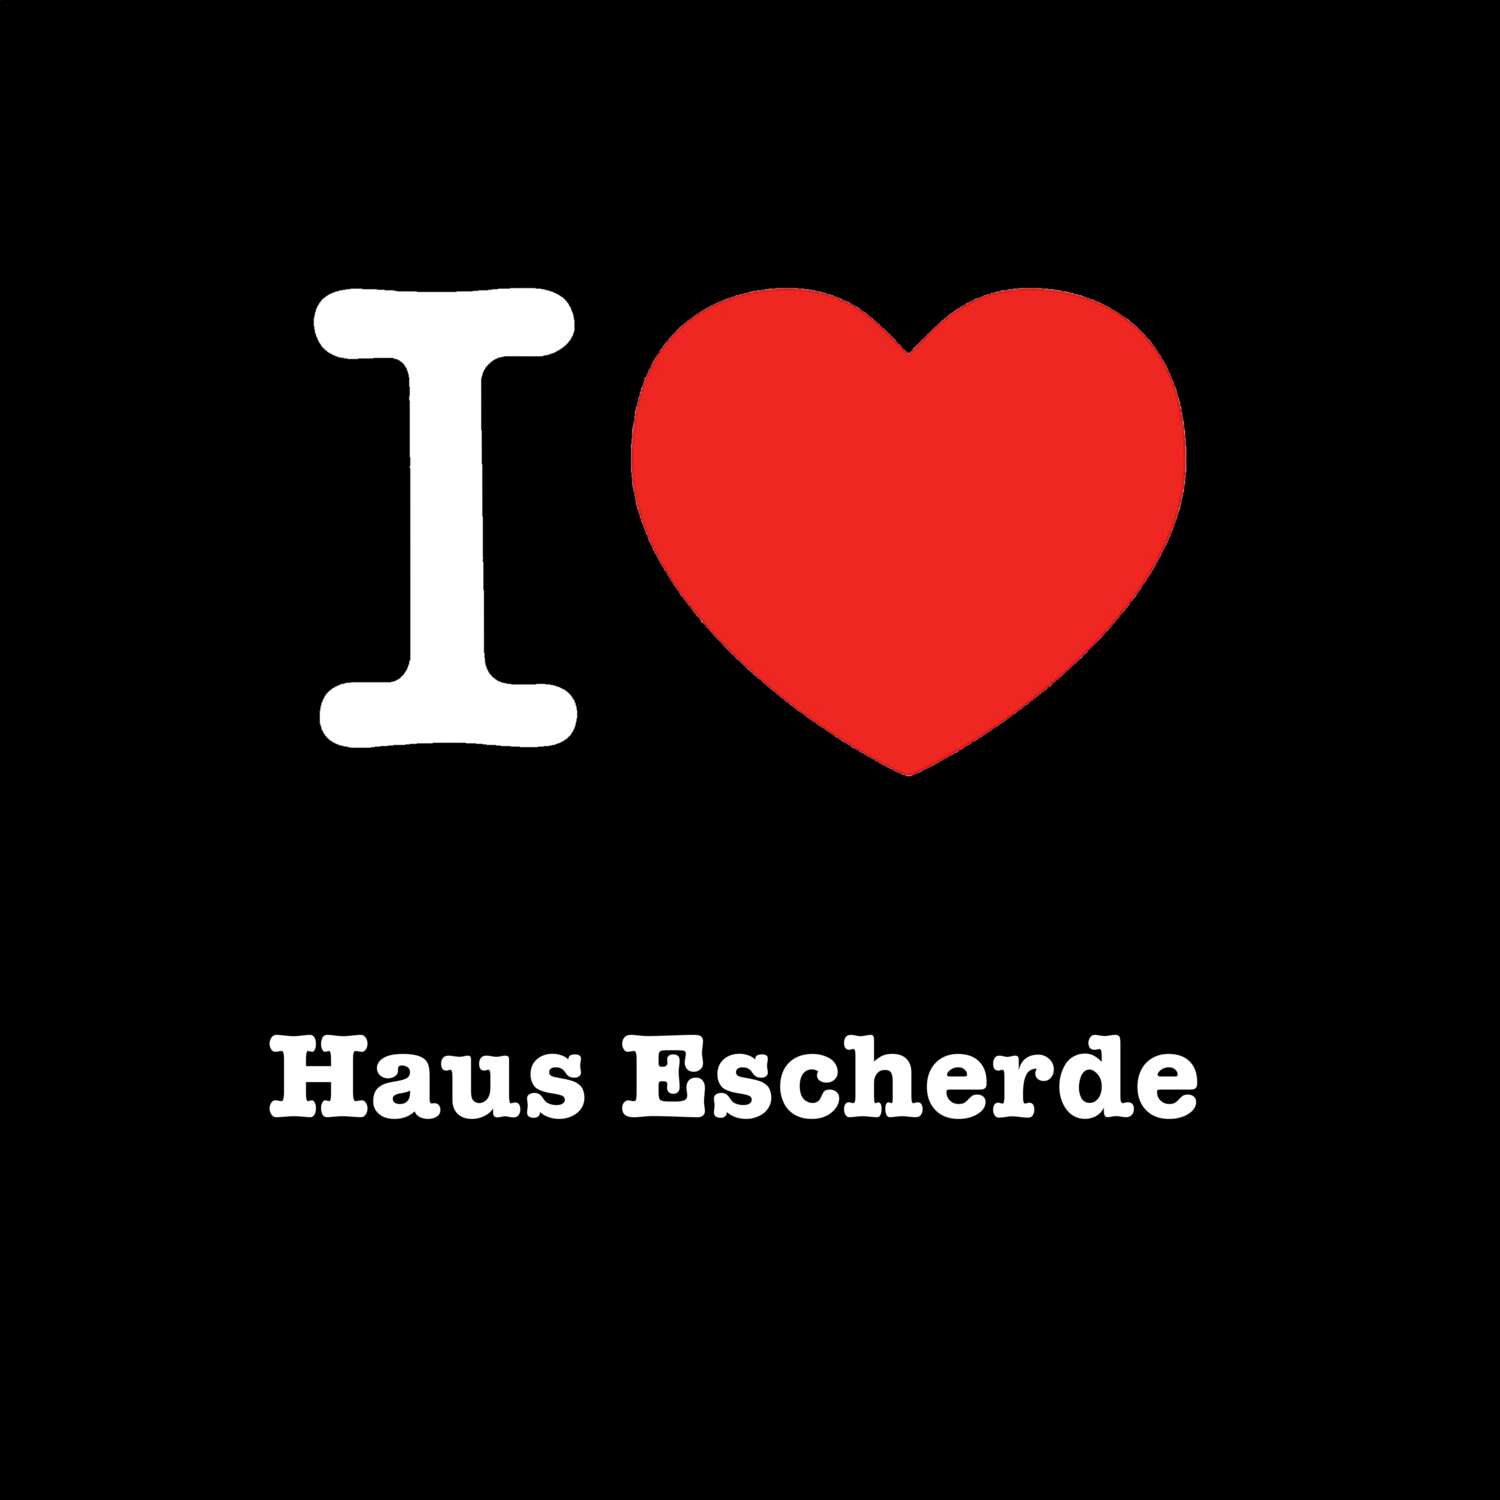 Haus Escherde T-Shirt »I love«